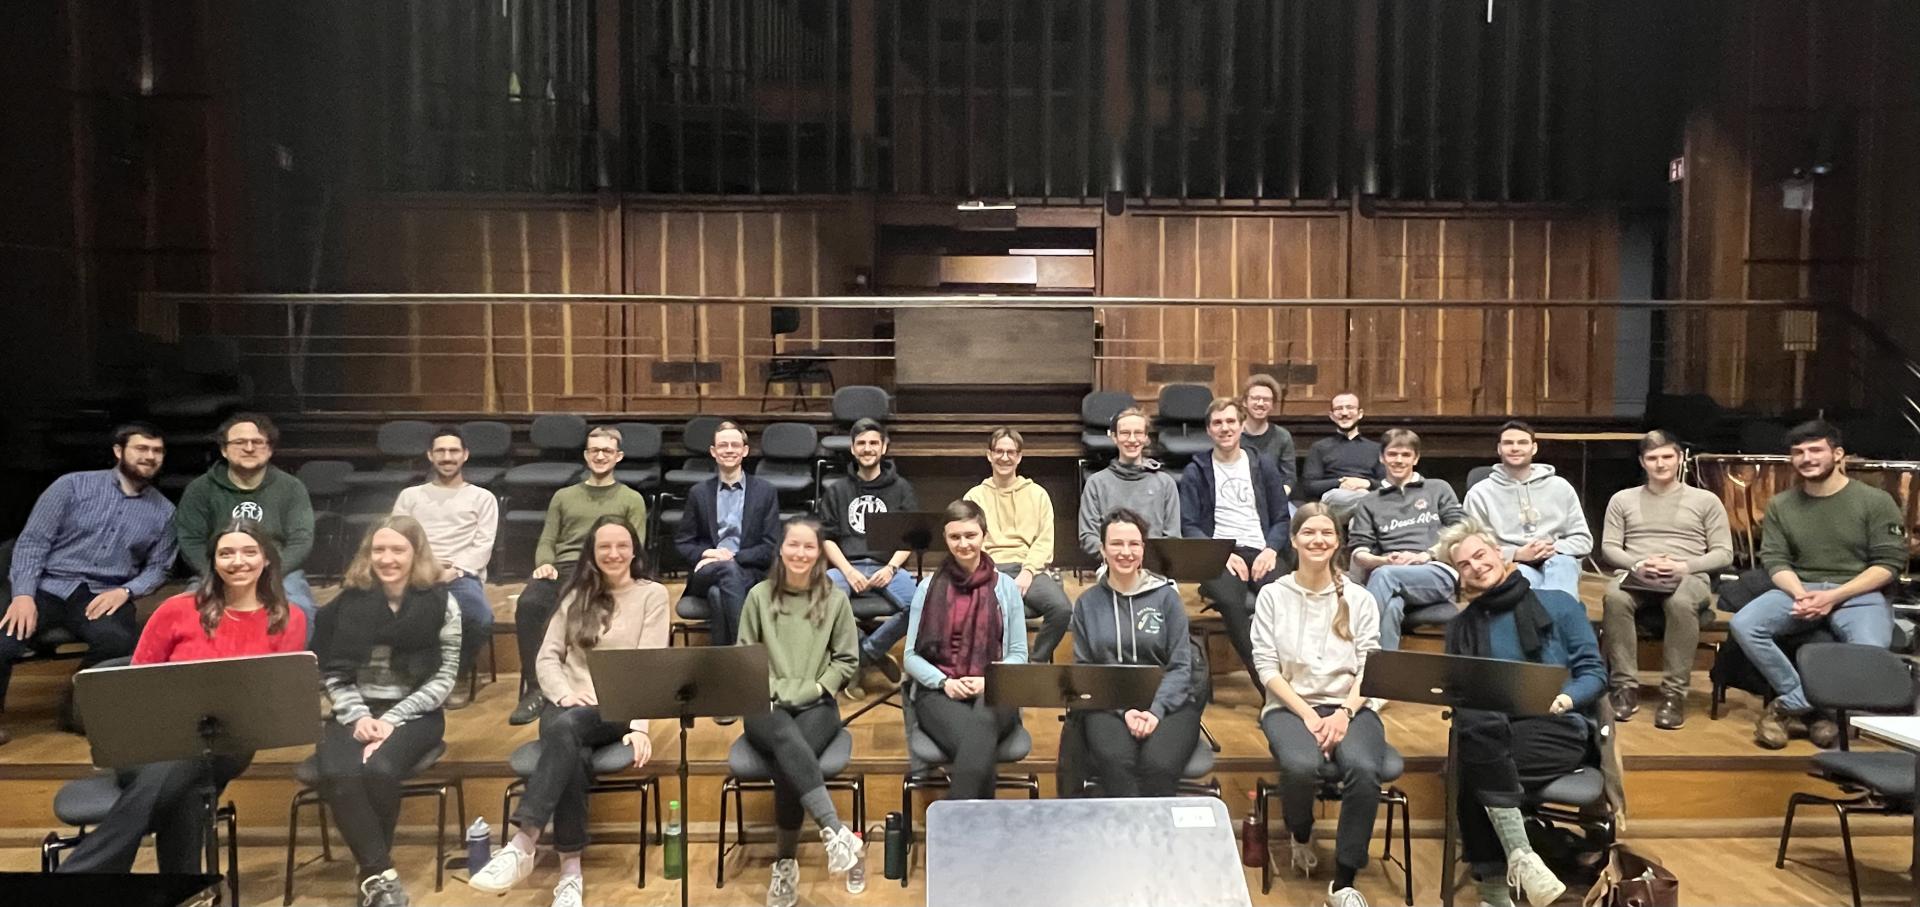 Gruppenfoto der Studierenden des Ausbildungsbereichs Kirchenmusik, alle sitzen auf Stühlen in zwei Reihen